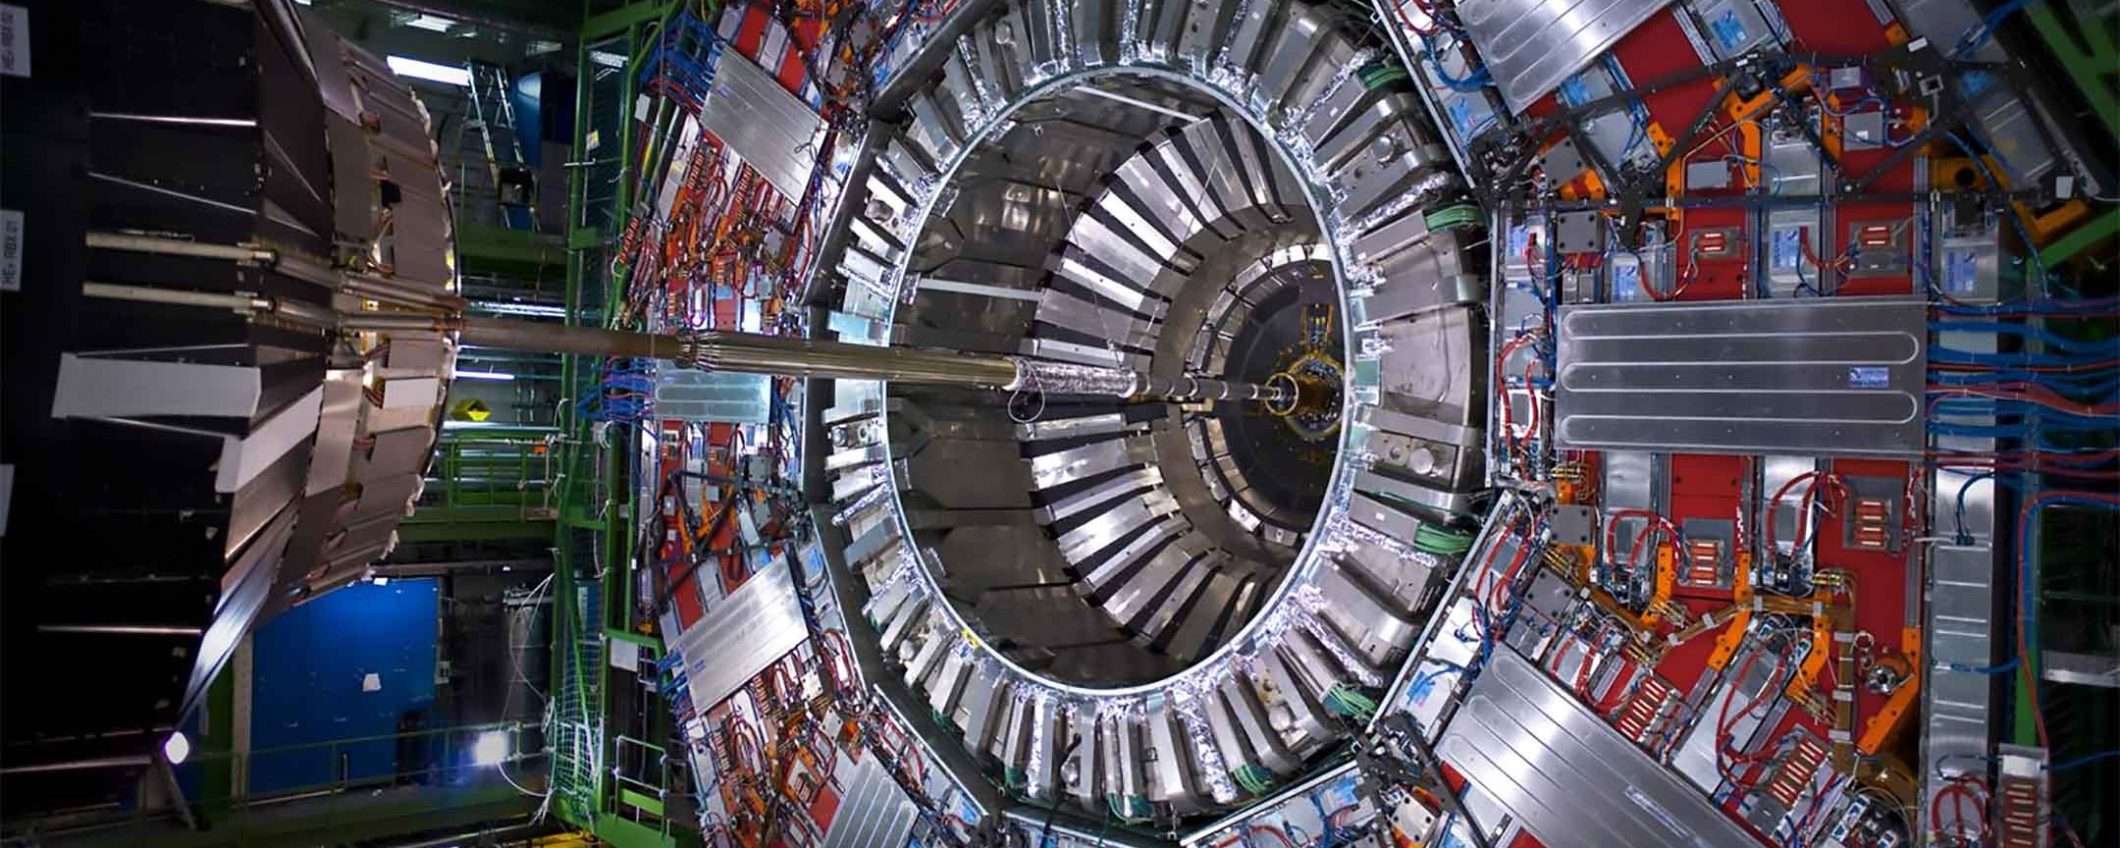 Facebook Workplace, l'addio del CERN per la privacy